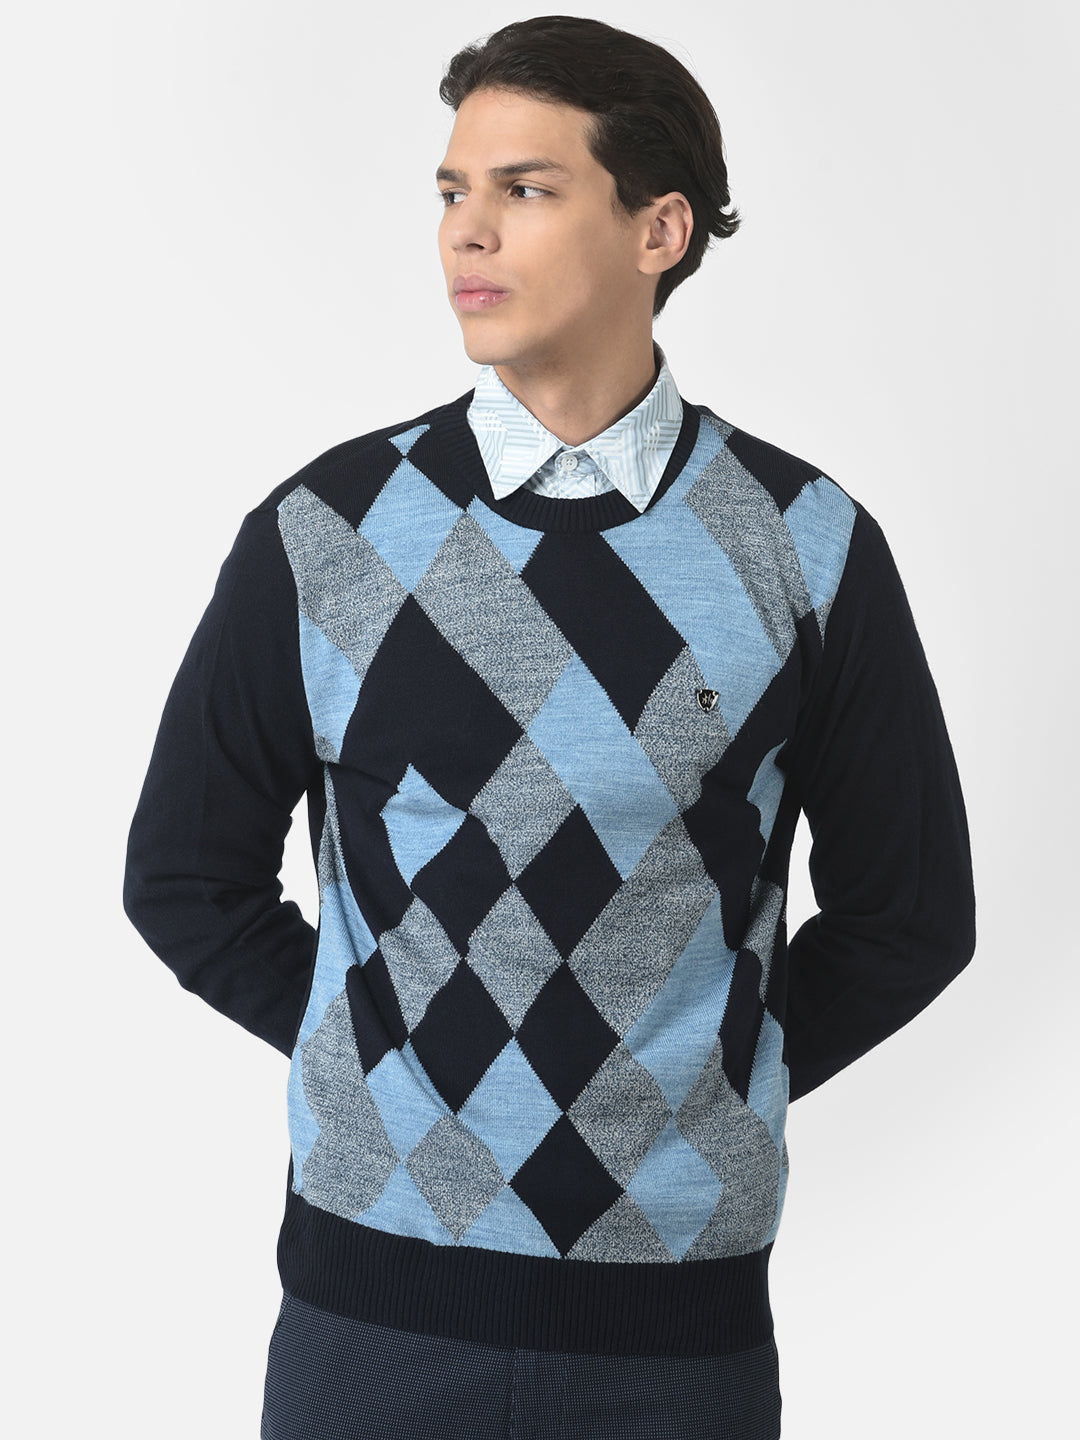 Sweater in Diamond Print 